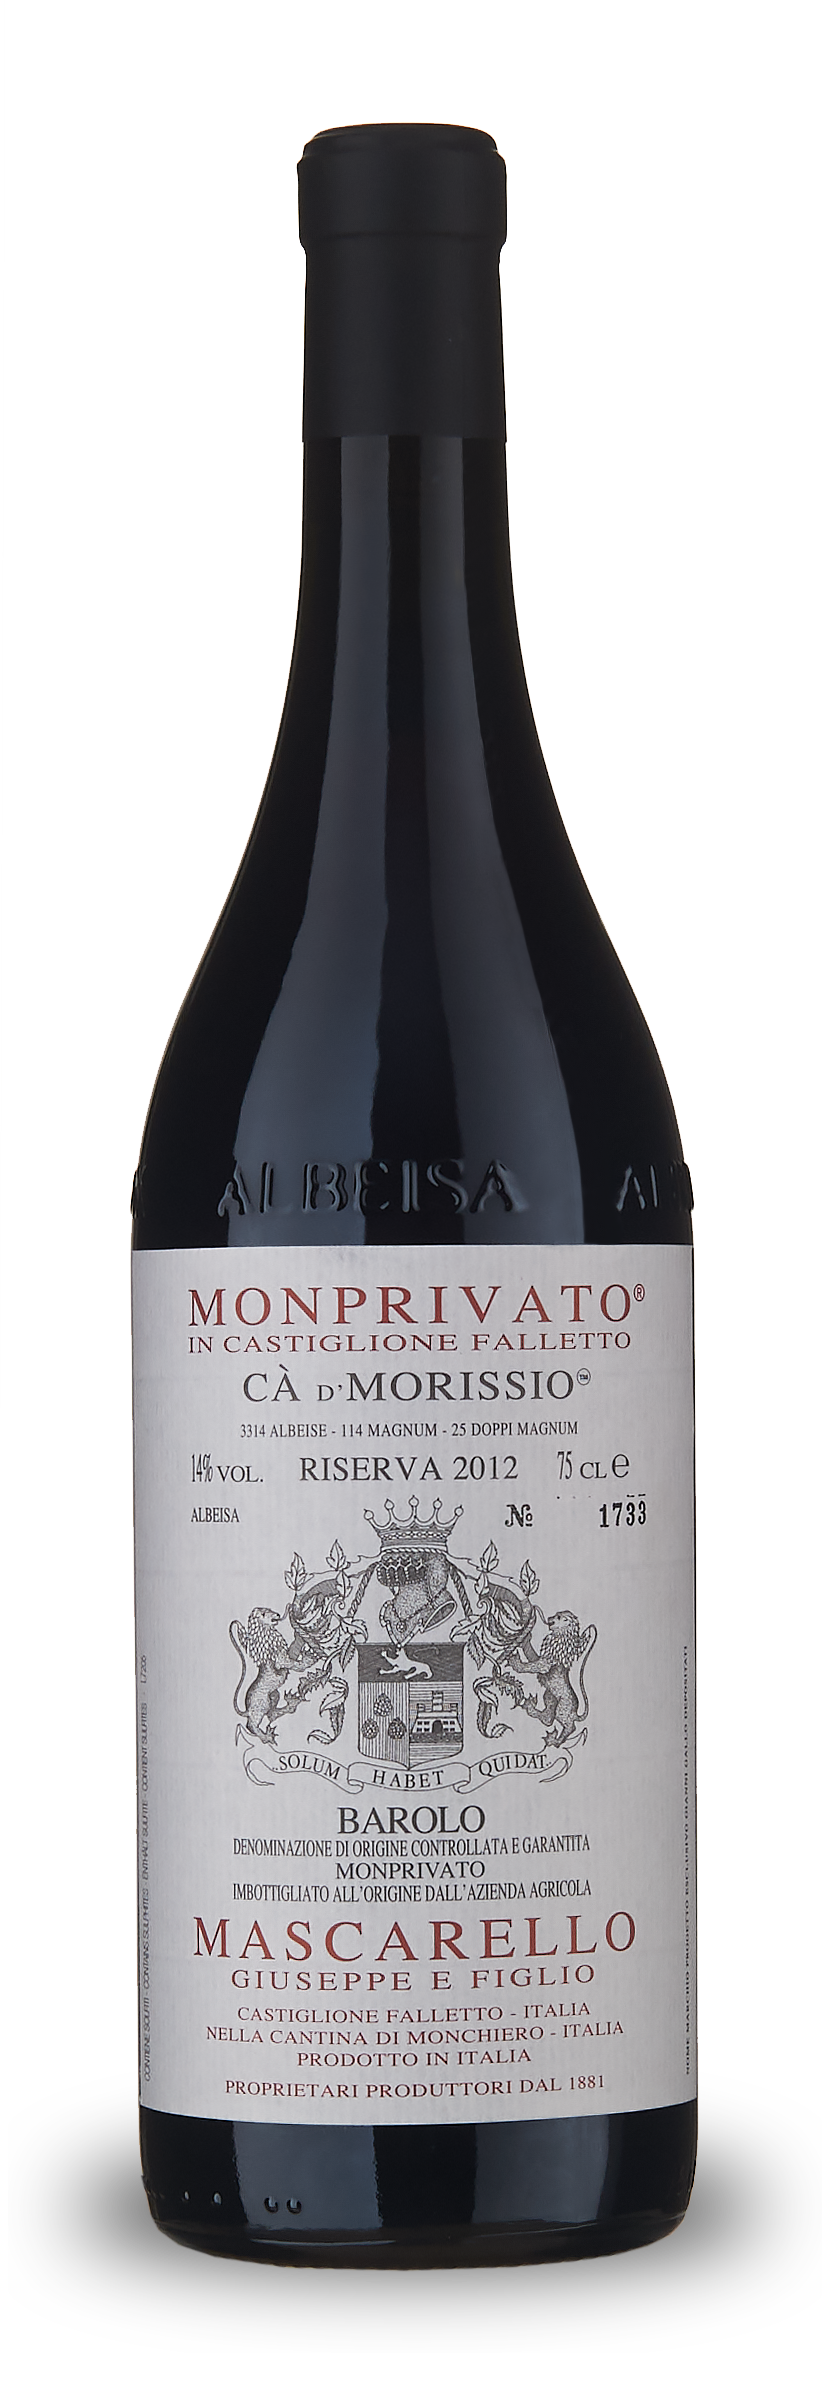 Barolo Monprivato Riserva Cà d'Morissio 2013 - POUZE NA ALOKACI PŘEDEM Kontaktujte nás pro další informace (indulge@flemmings.wine)